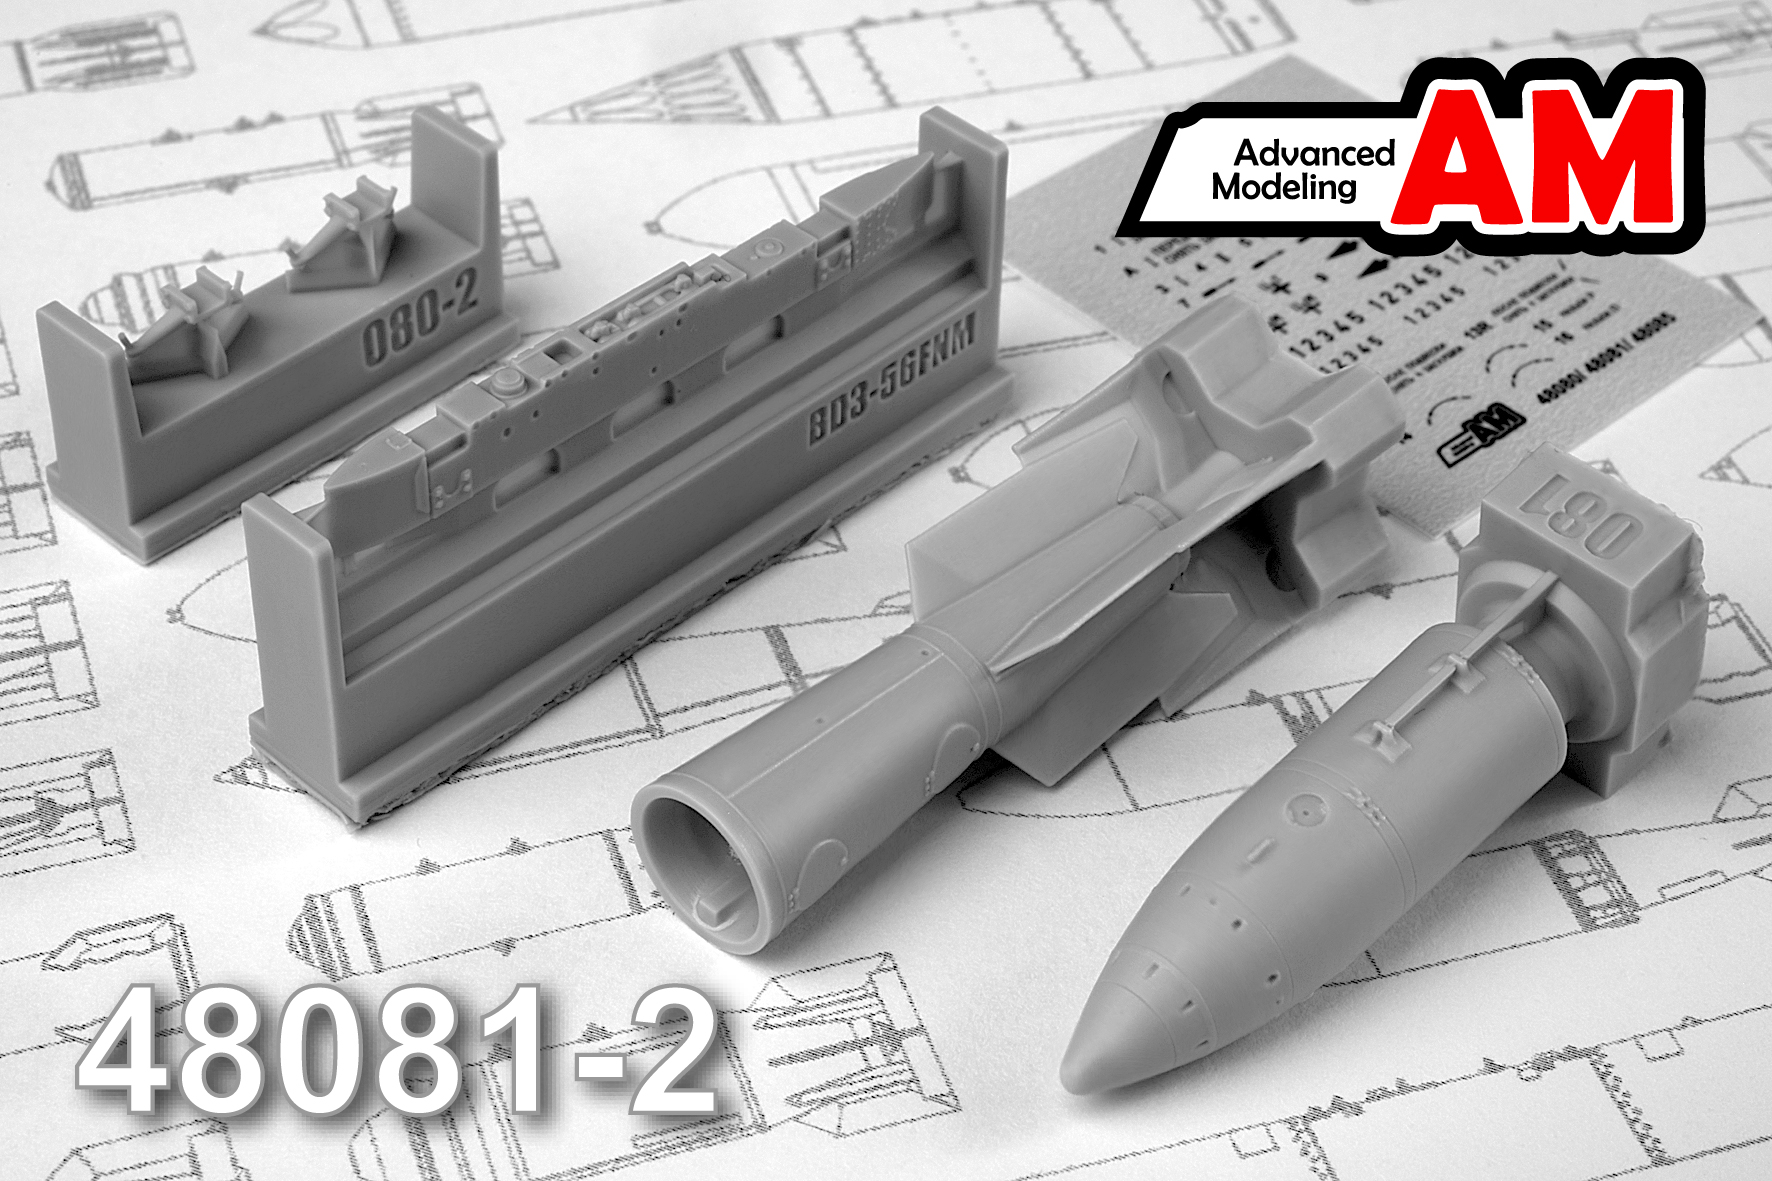 AMC 48081-2  дополнения из смолы  РН-28 спецбоеприпас с БД3-56ФНМ  (1:48)